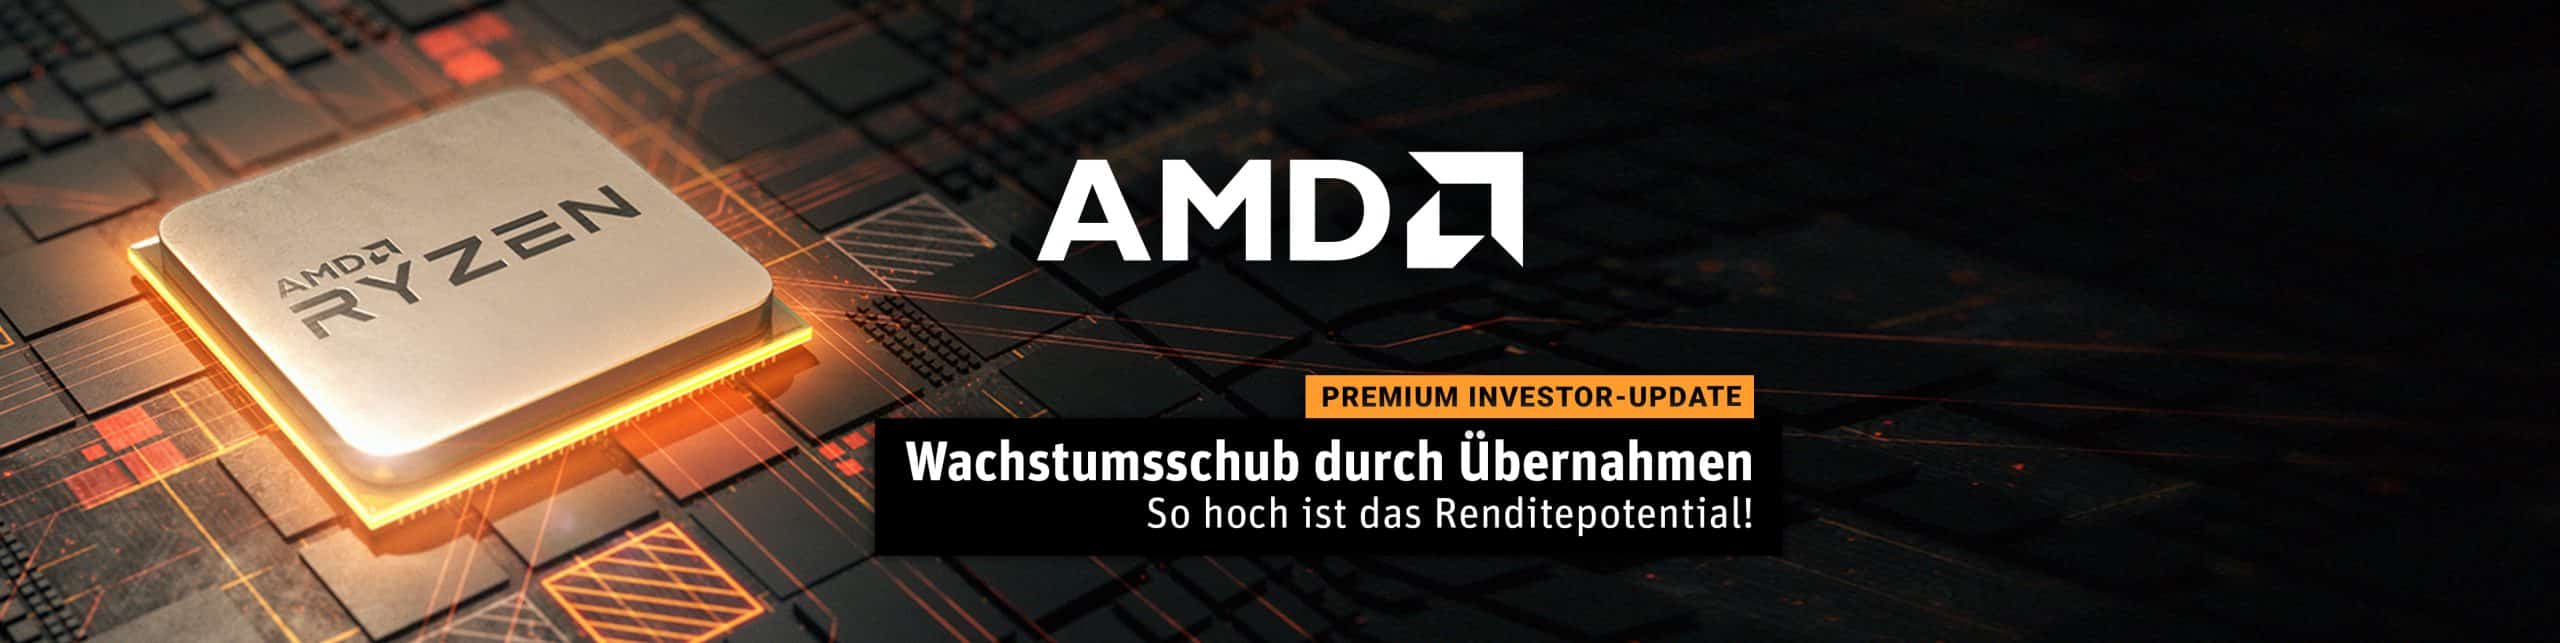 AMD Investor-Update - Wachstumsschub durch ÜbernahmenSo hoch ist das Renditepotential header